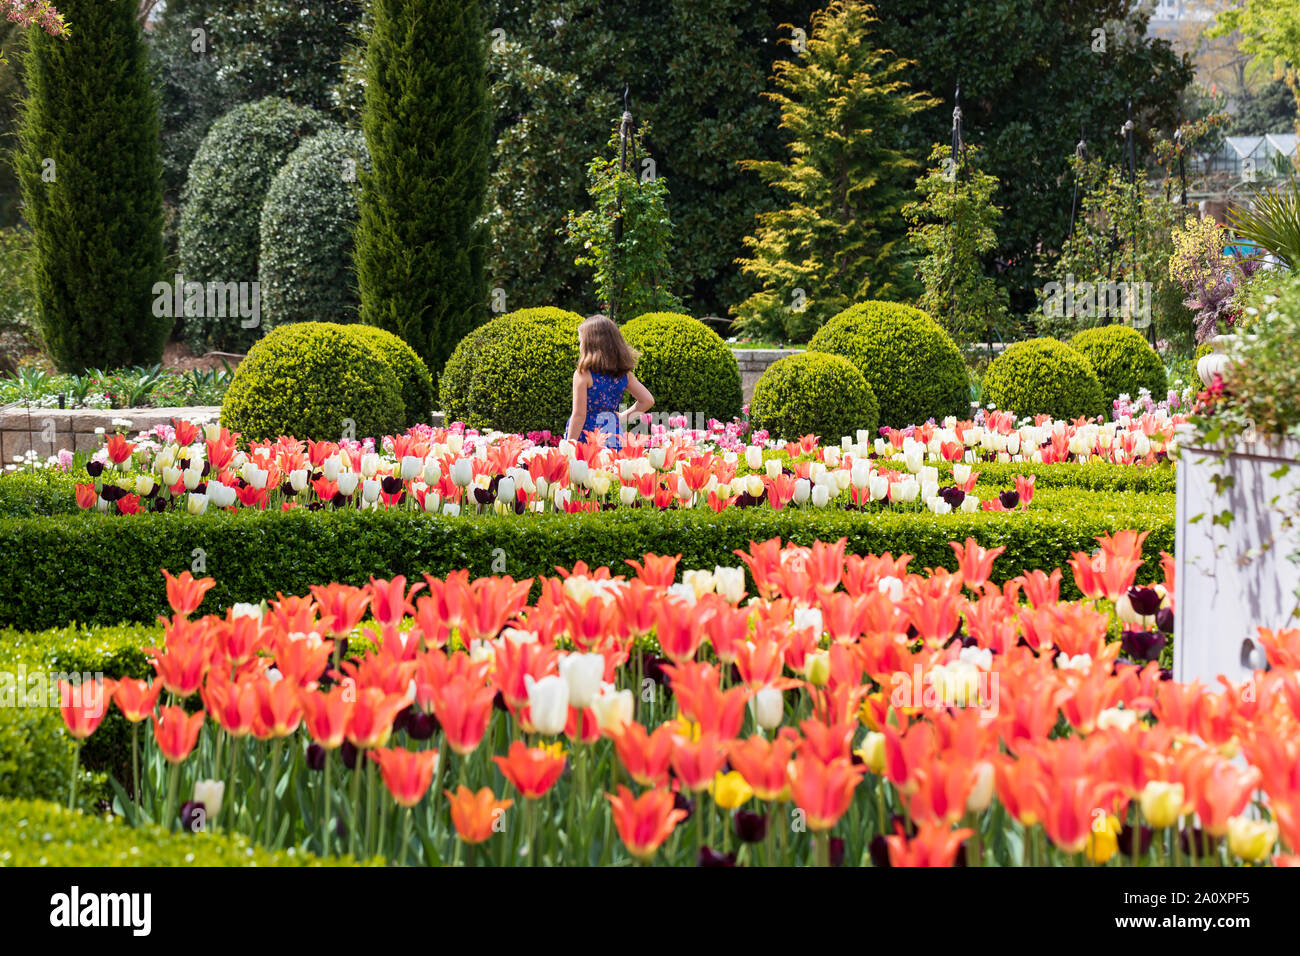 A young girl enjoys the tulips at Atlanta Botanical Garden Stock Photo